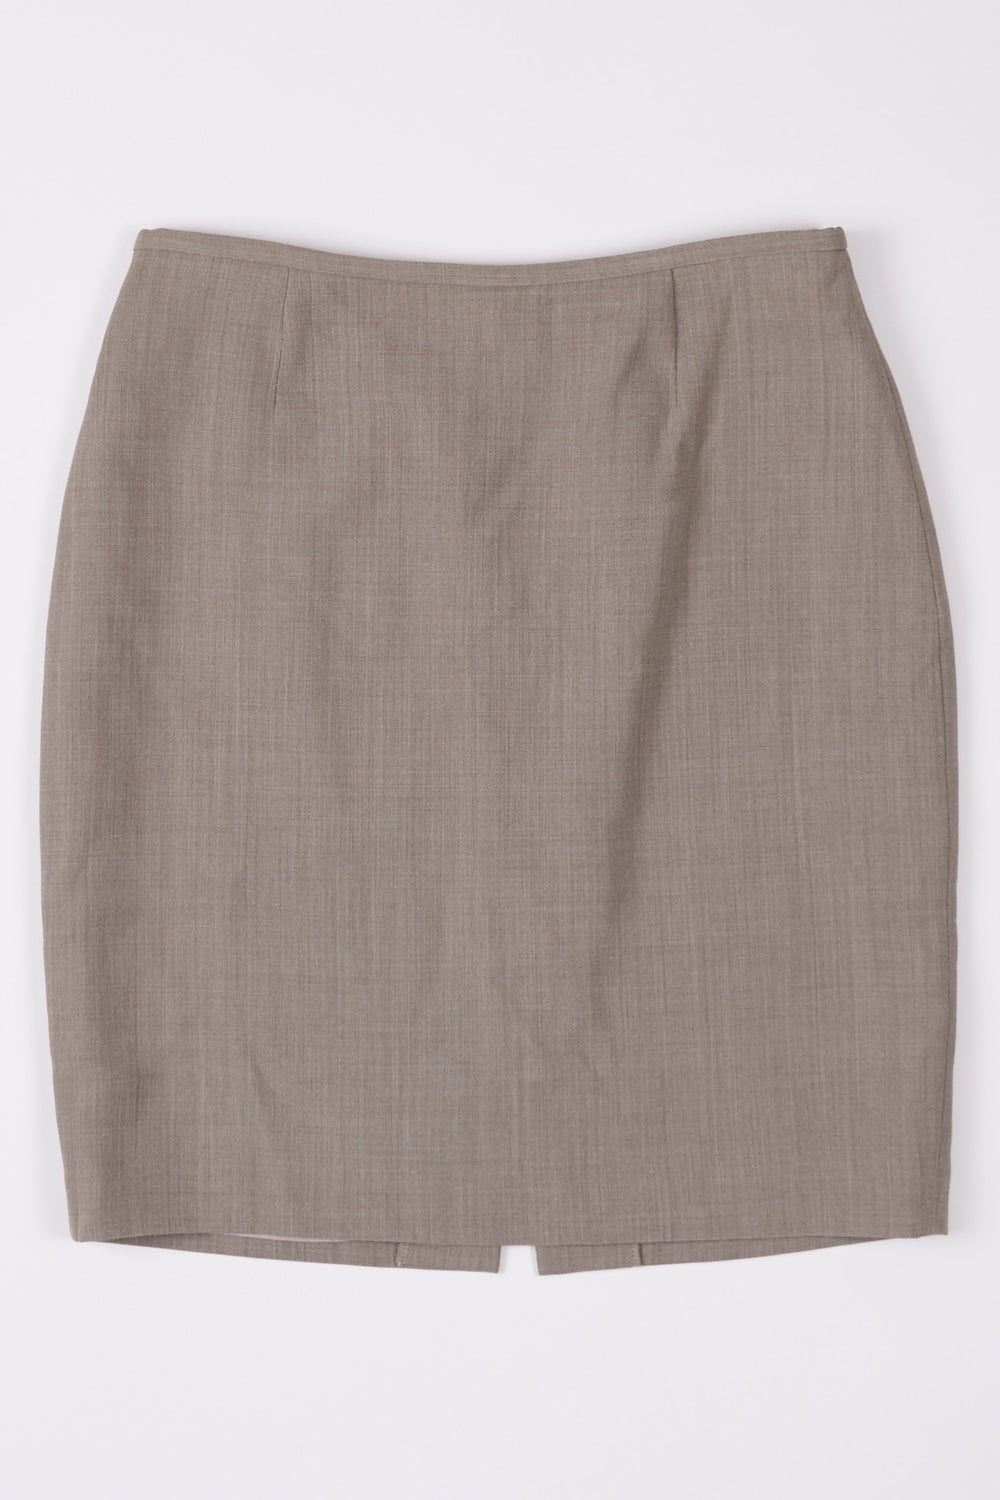 Jigsaw Olive Green Wool Blend Pencil Skirt 12